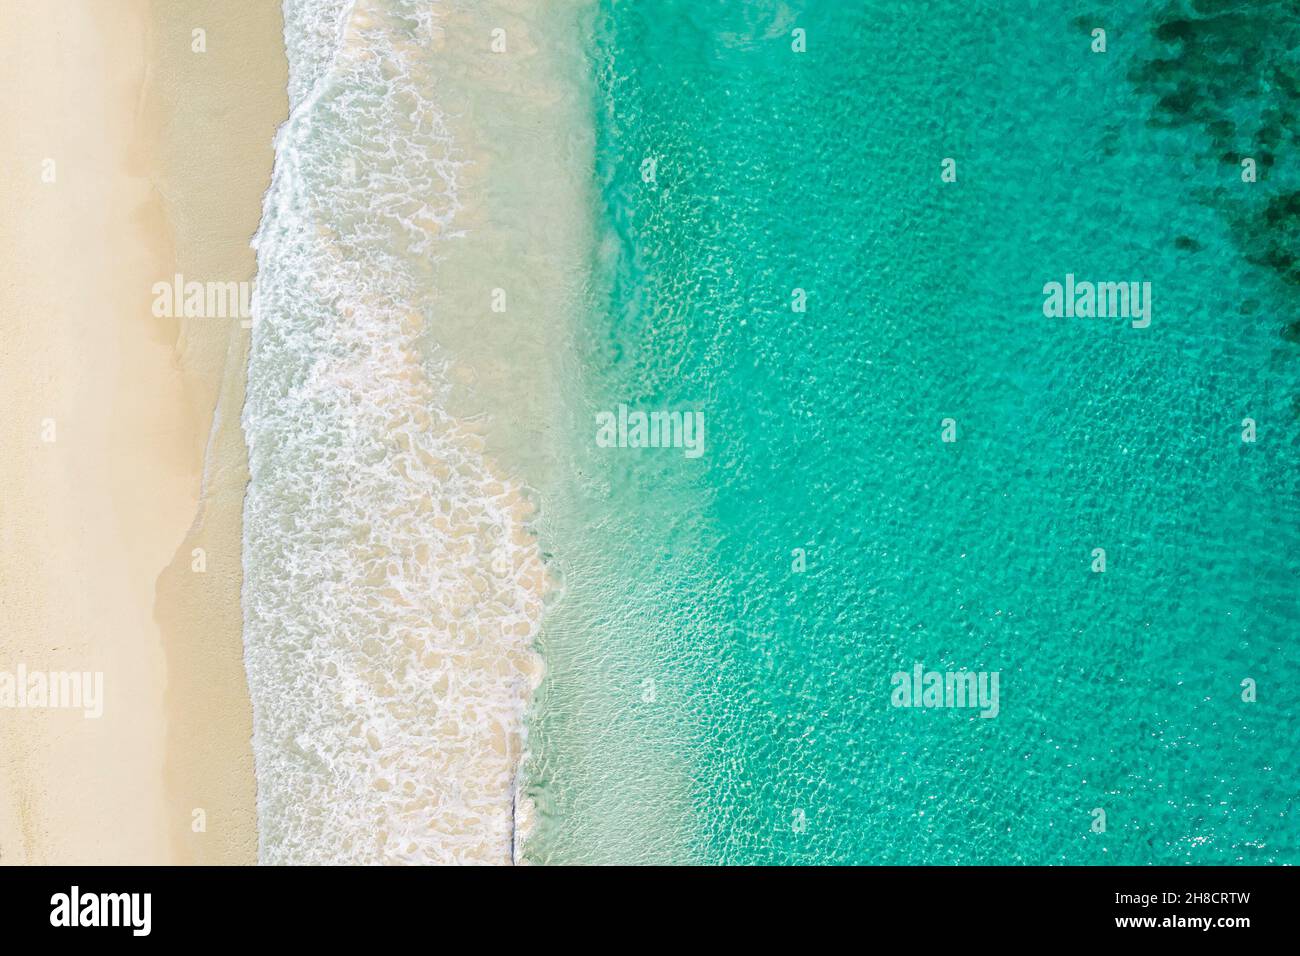 Vue aérienne du dessus de la plage de sable et de la mer bleue.Photo aérienne de la plage de rencontre de l'eau bleue de l'océan et des vagues mousseuse.Vue aérienne de dessus de plage vue aérienne au-dessus de la mer. Banque D'Images